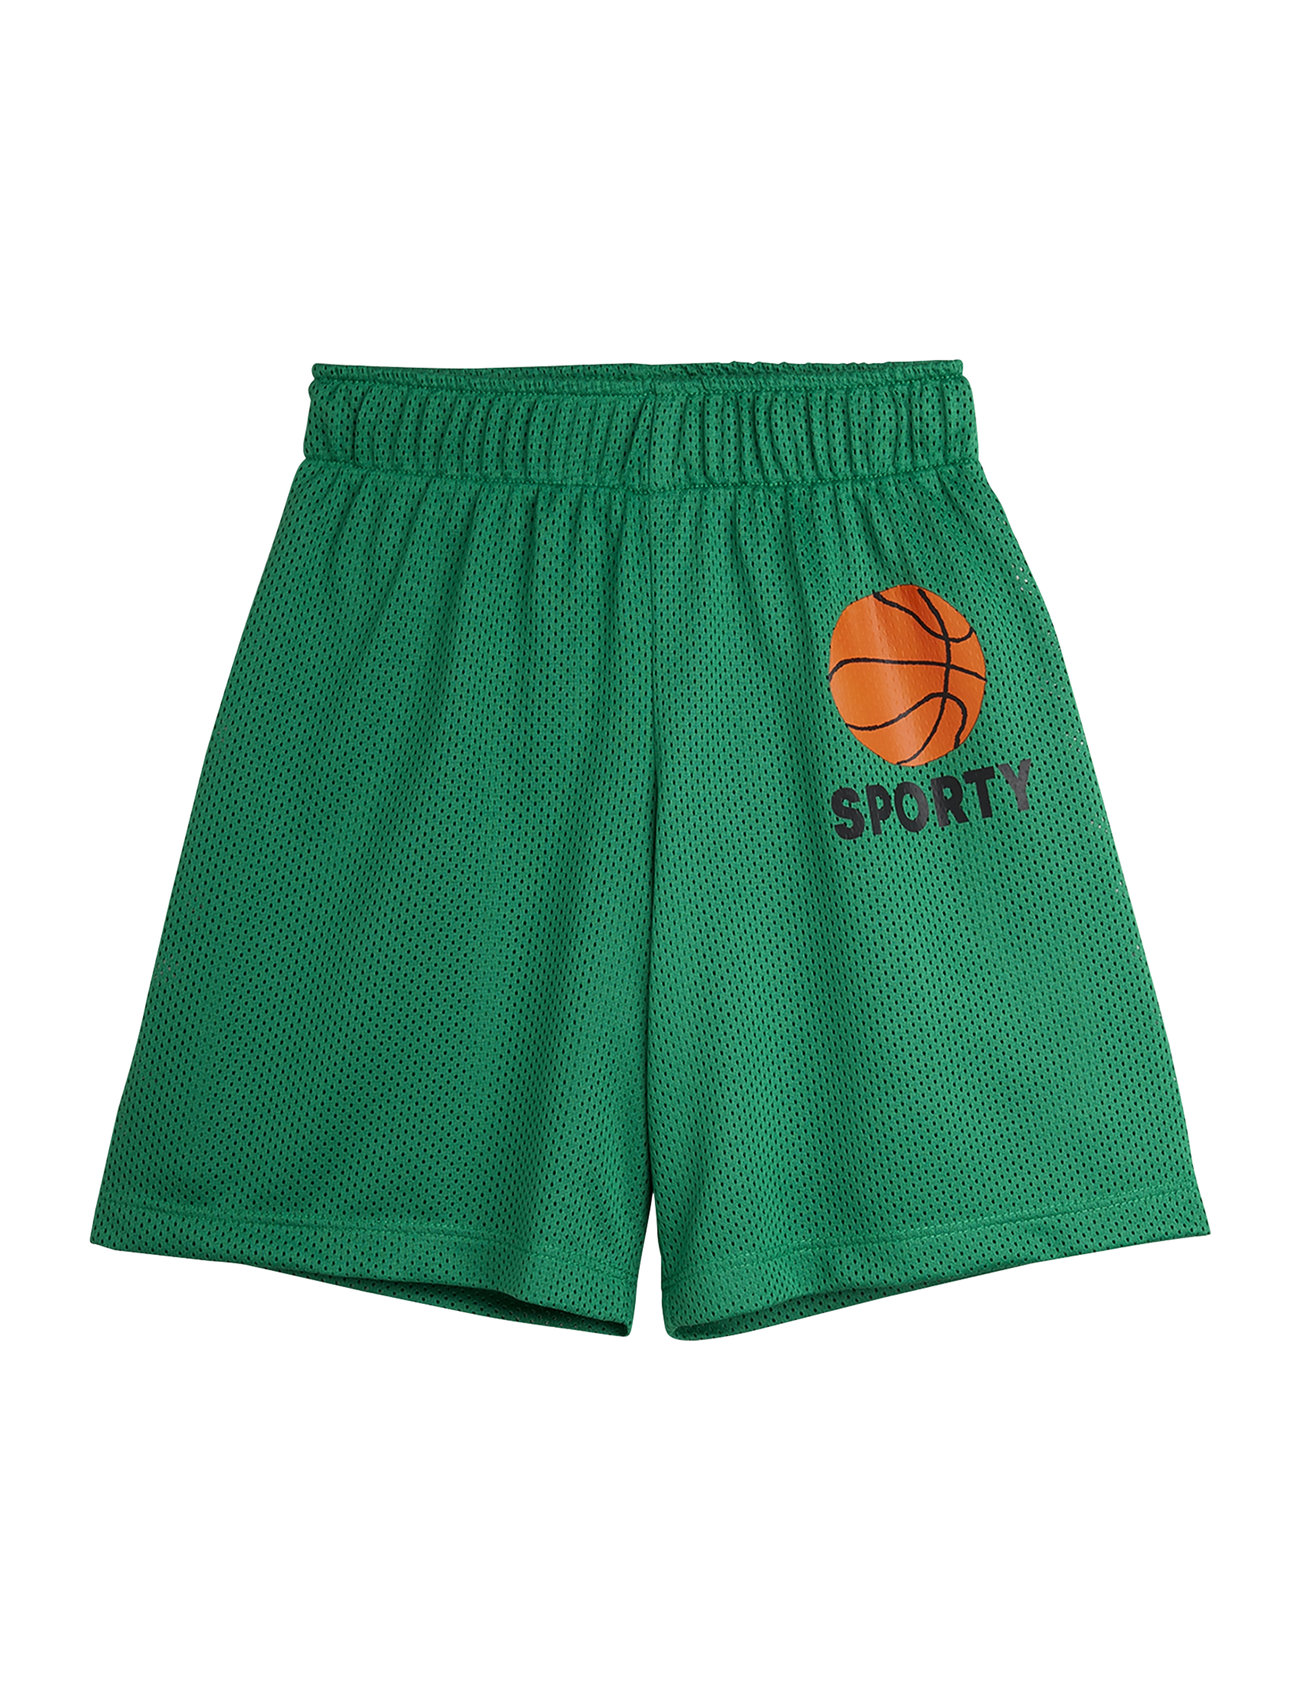 Basket Mesh Sp Shorts Bottoms Shorts Green Mini Rodini